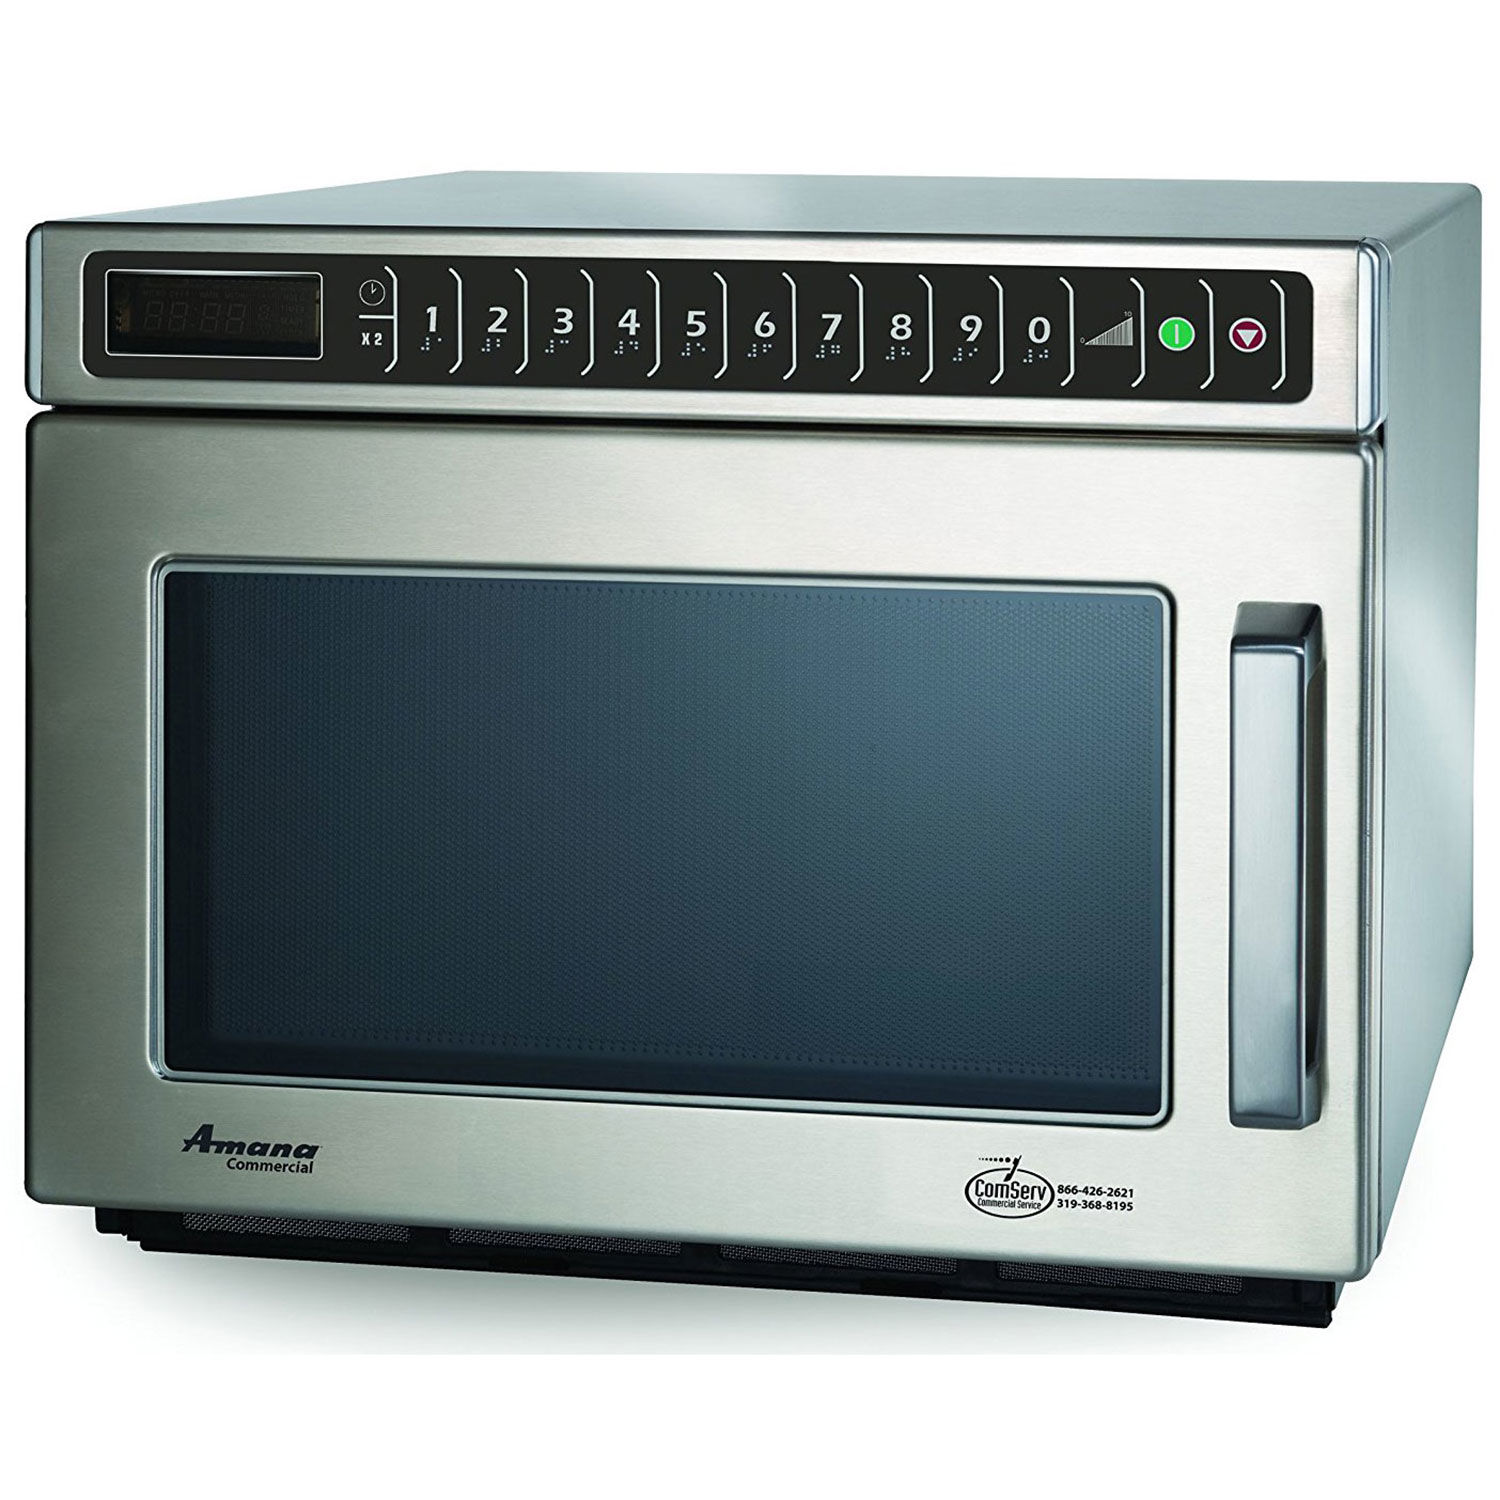 Commercial Microwave 0.6 Cu. Ft. 2100 Watt Keypad HD 42159049745 | eBay